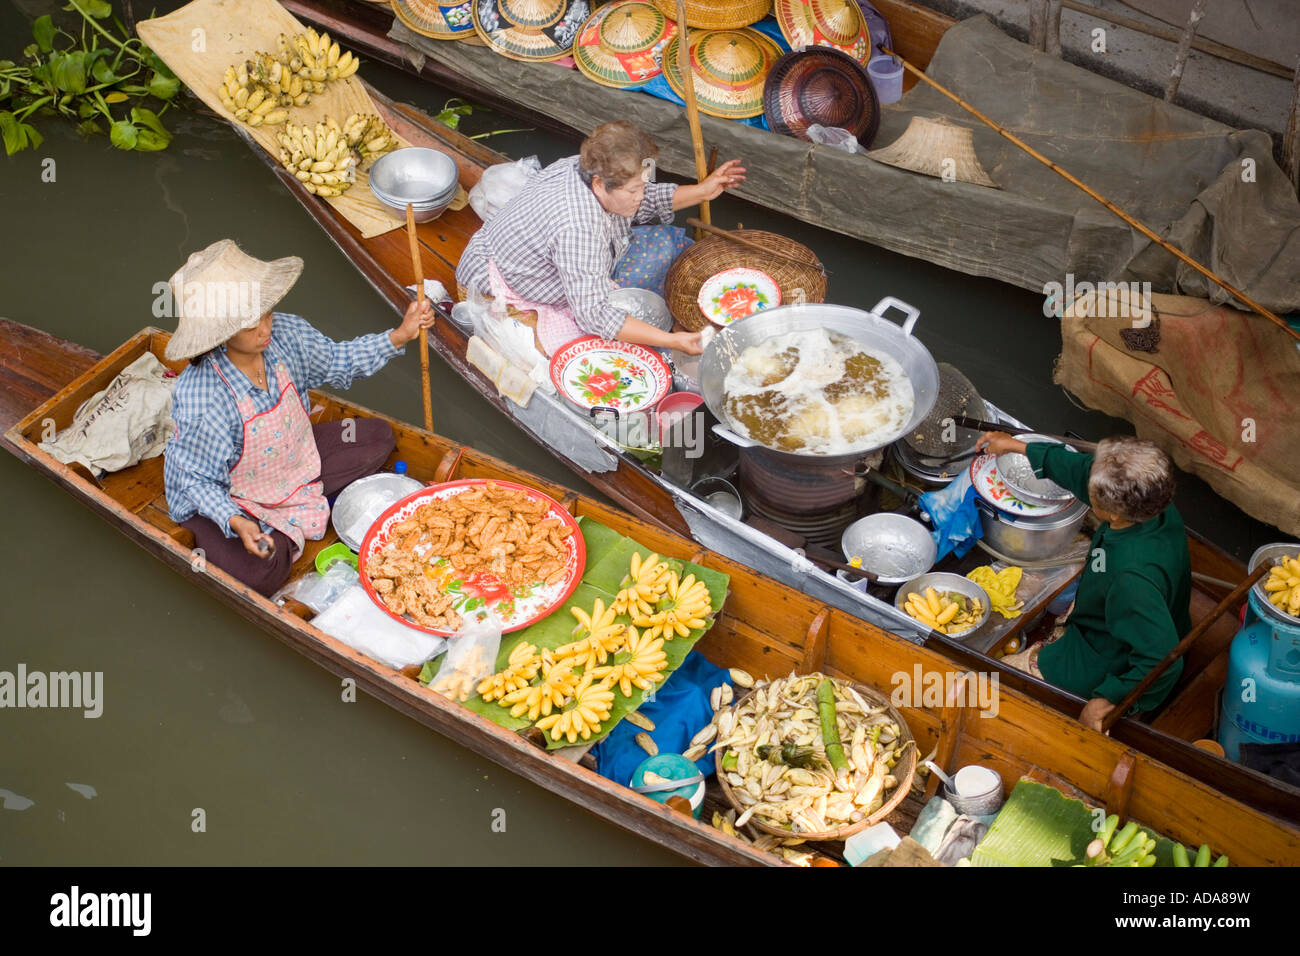 Vue de dessus de deux bateaux au Marché Flottant Damnoen Saduak près de Bangkok Thaïlande Ratchaburi Banque D'Images